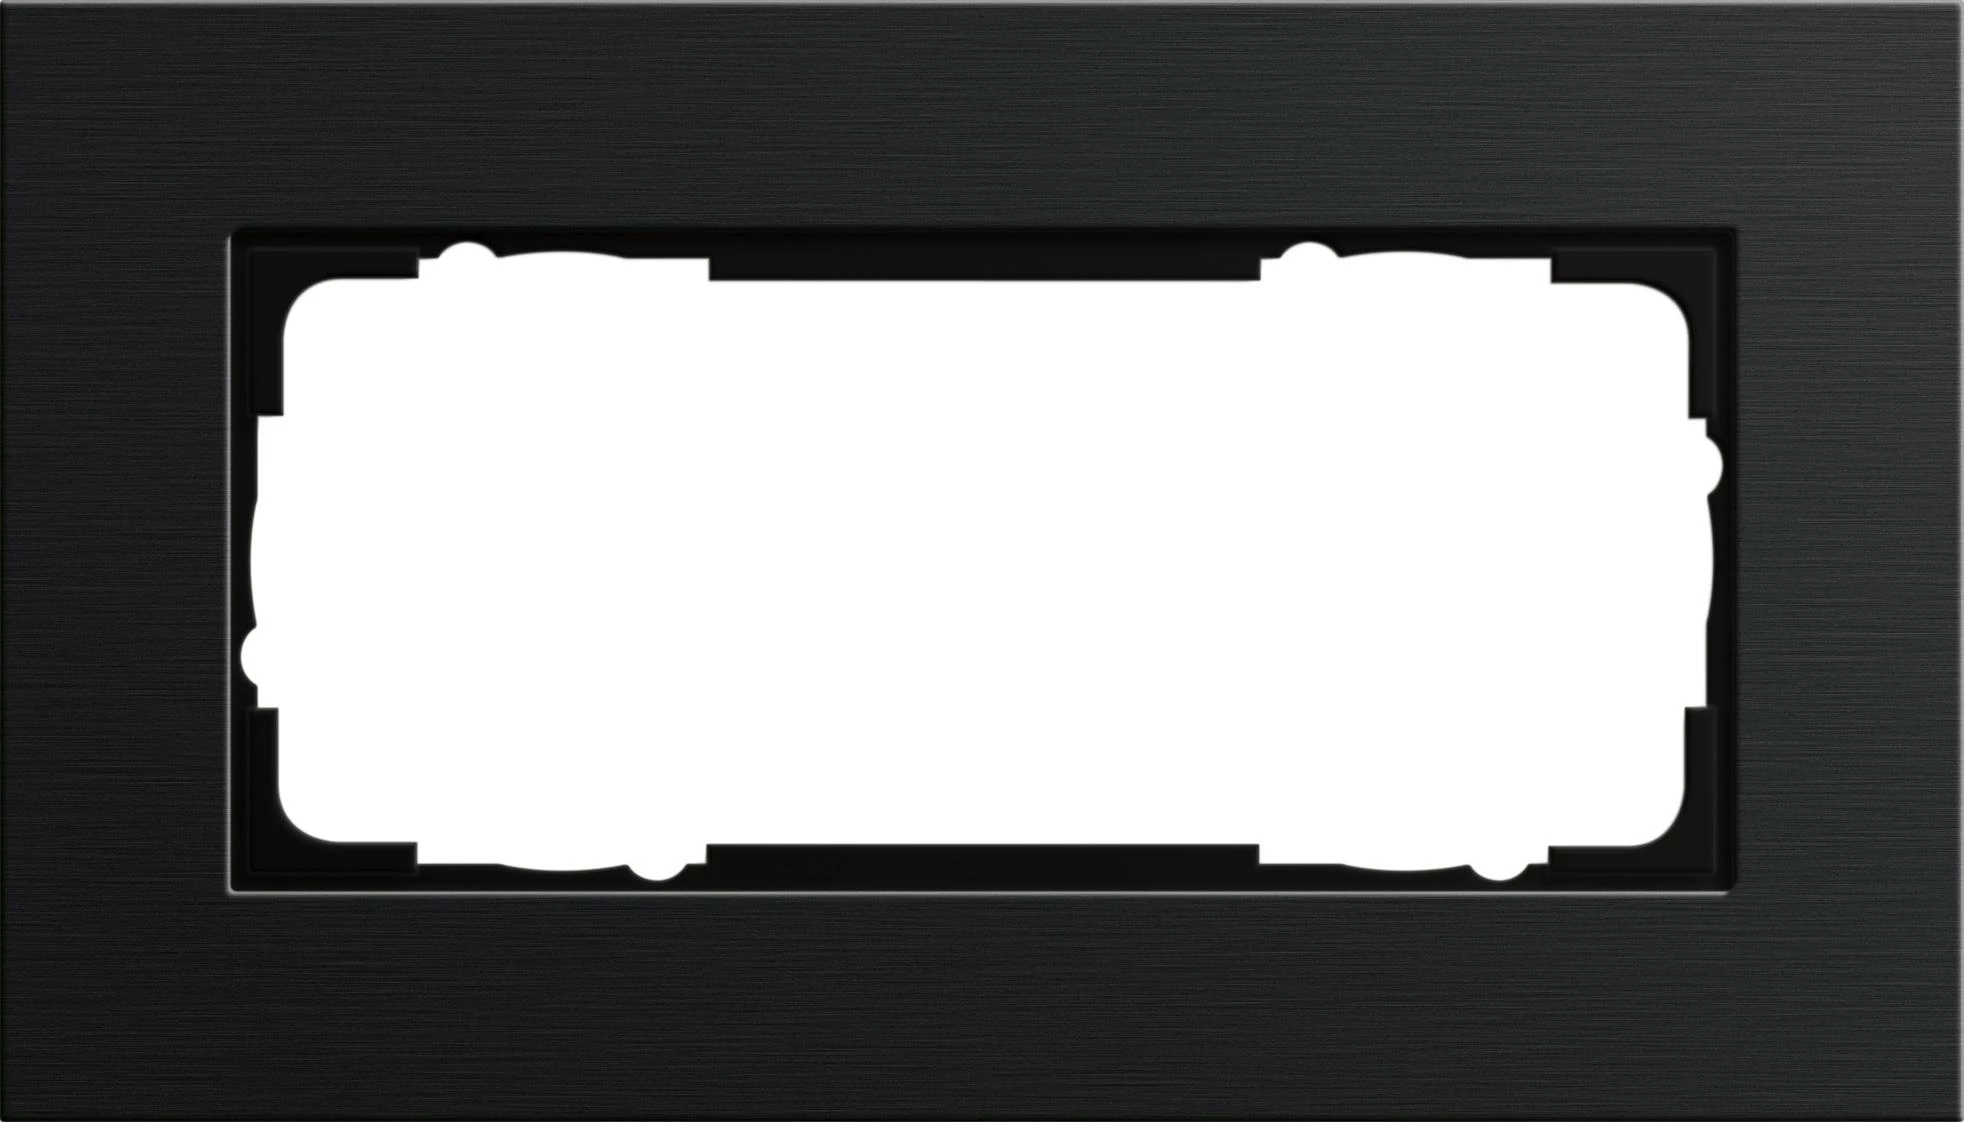  артикул 1002126 название Рамка 2-ая (двойная) без перегородки, Алюминий Черный (анодированный), серия Esprit